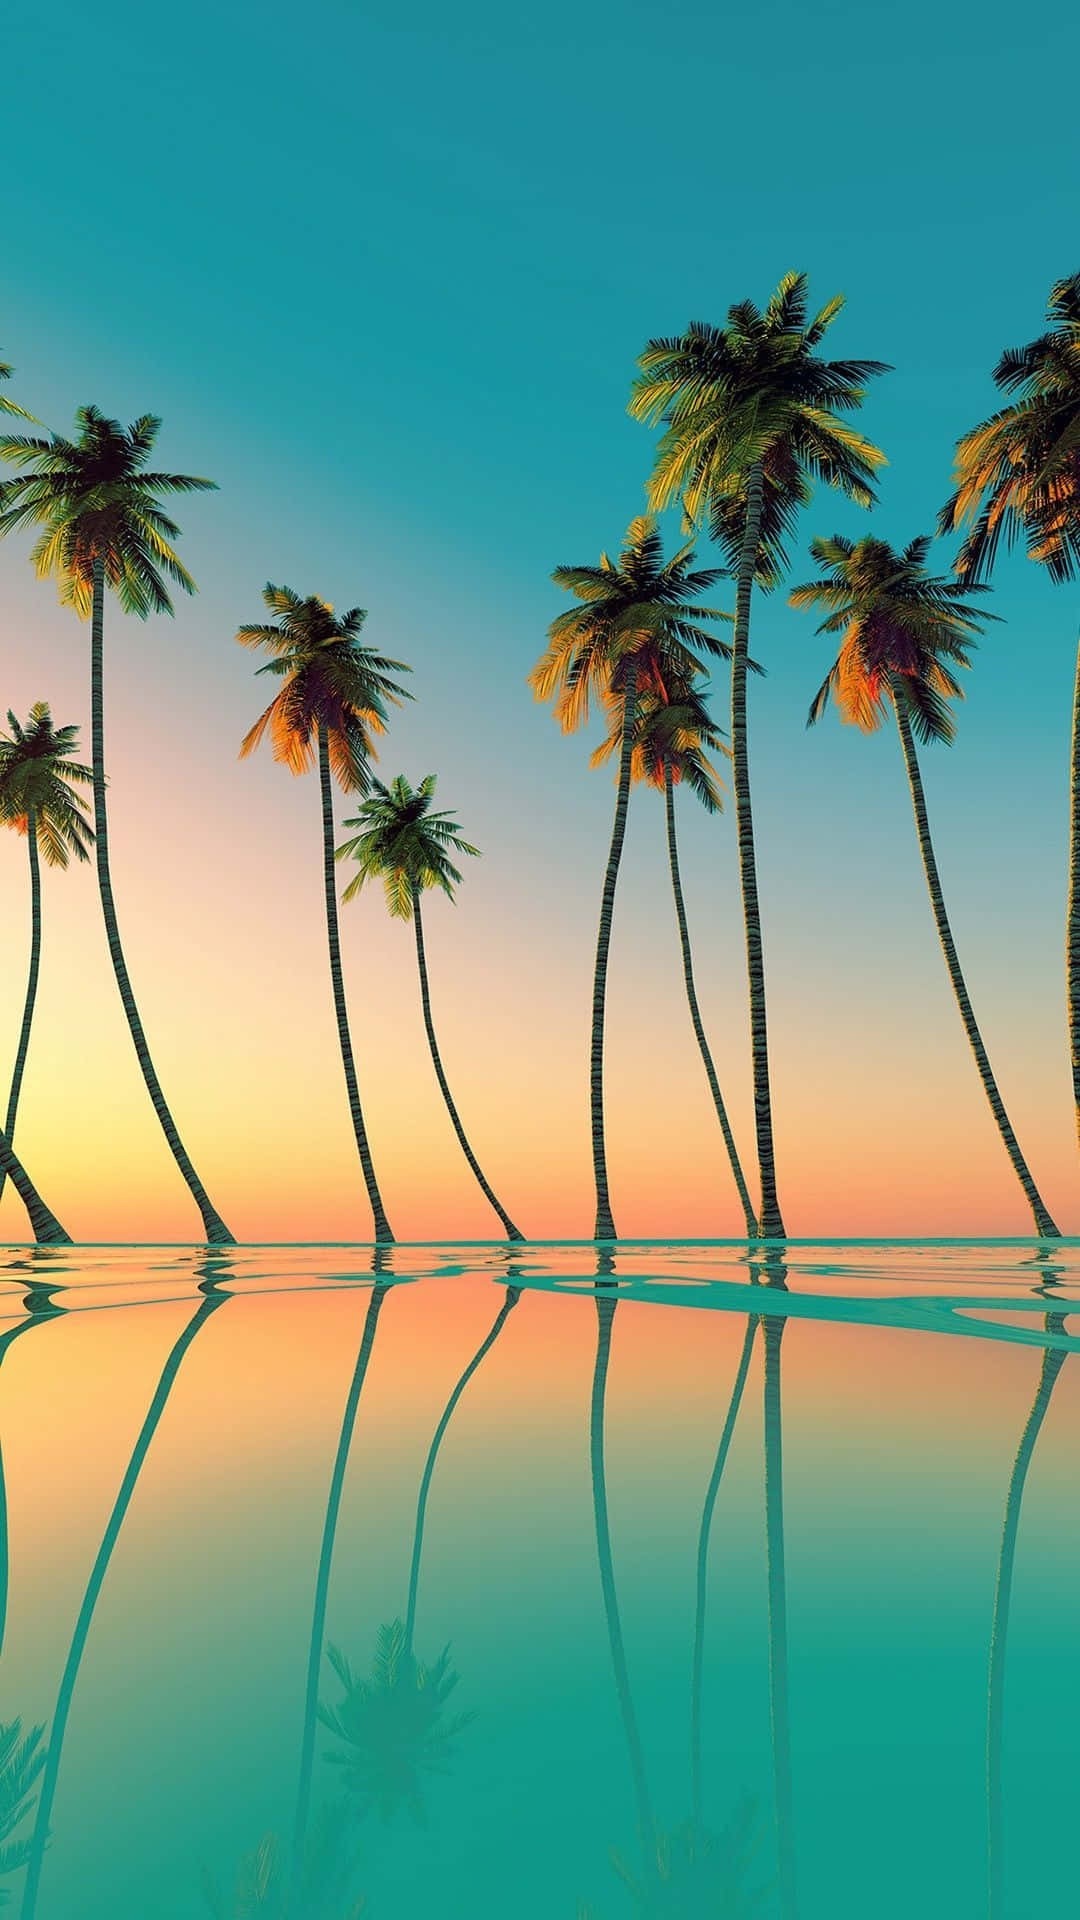 Umagrande Palmeira Estética Com Um Vibrante Pôr Do Sol Laranja. Papel de Parede